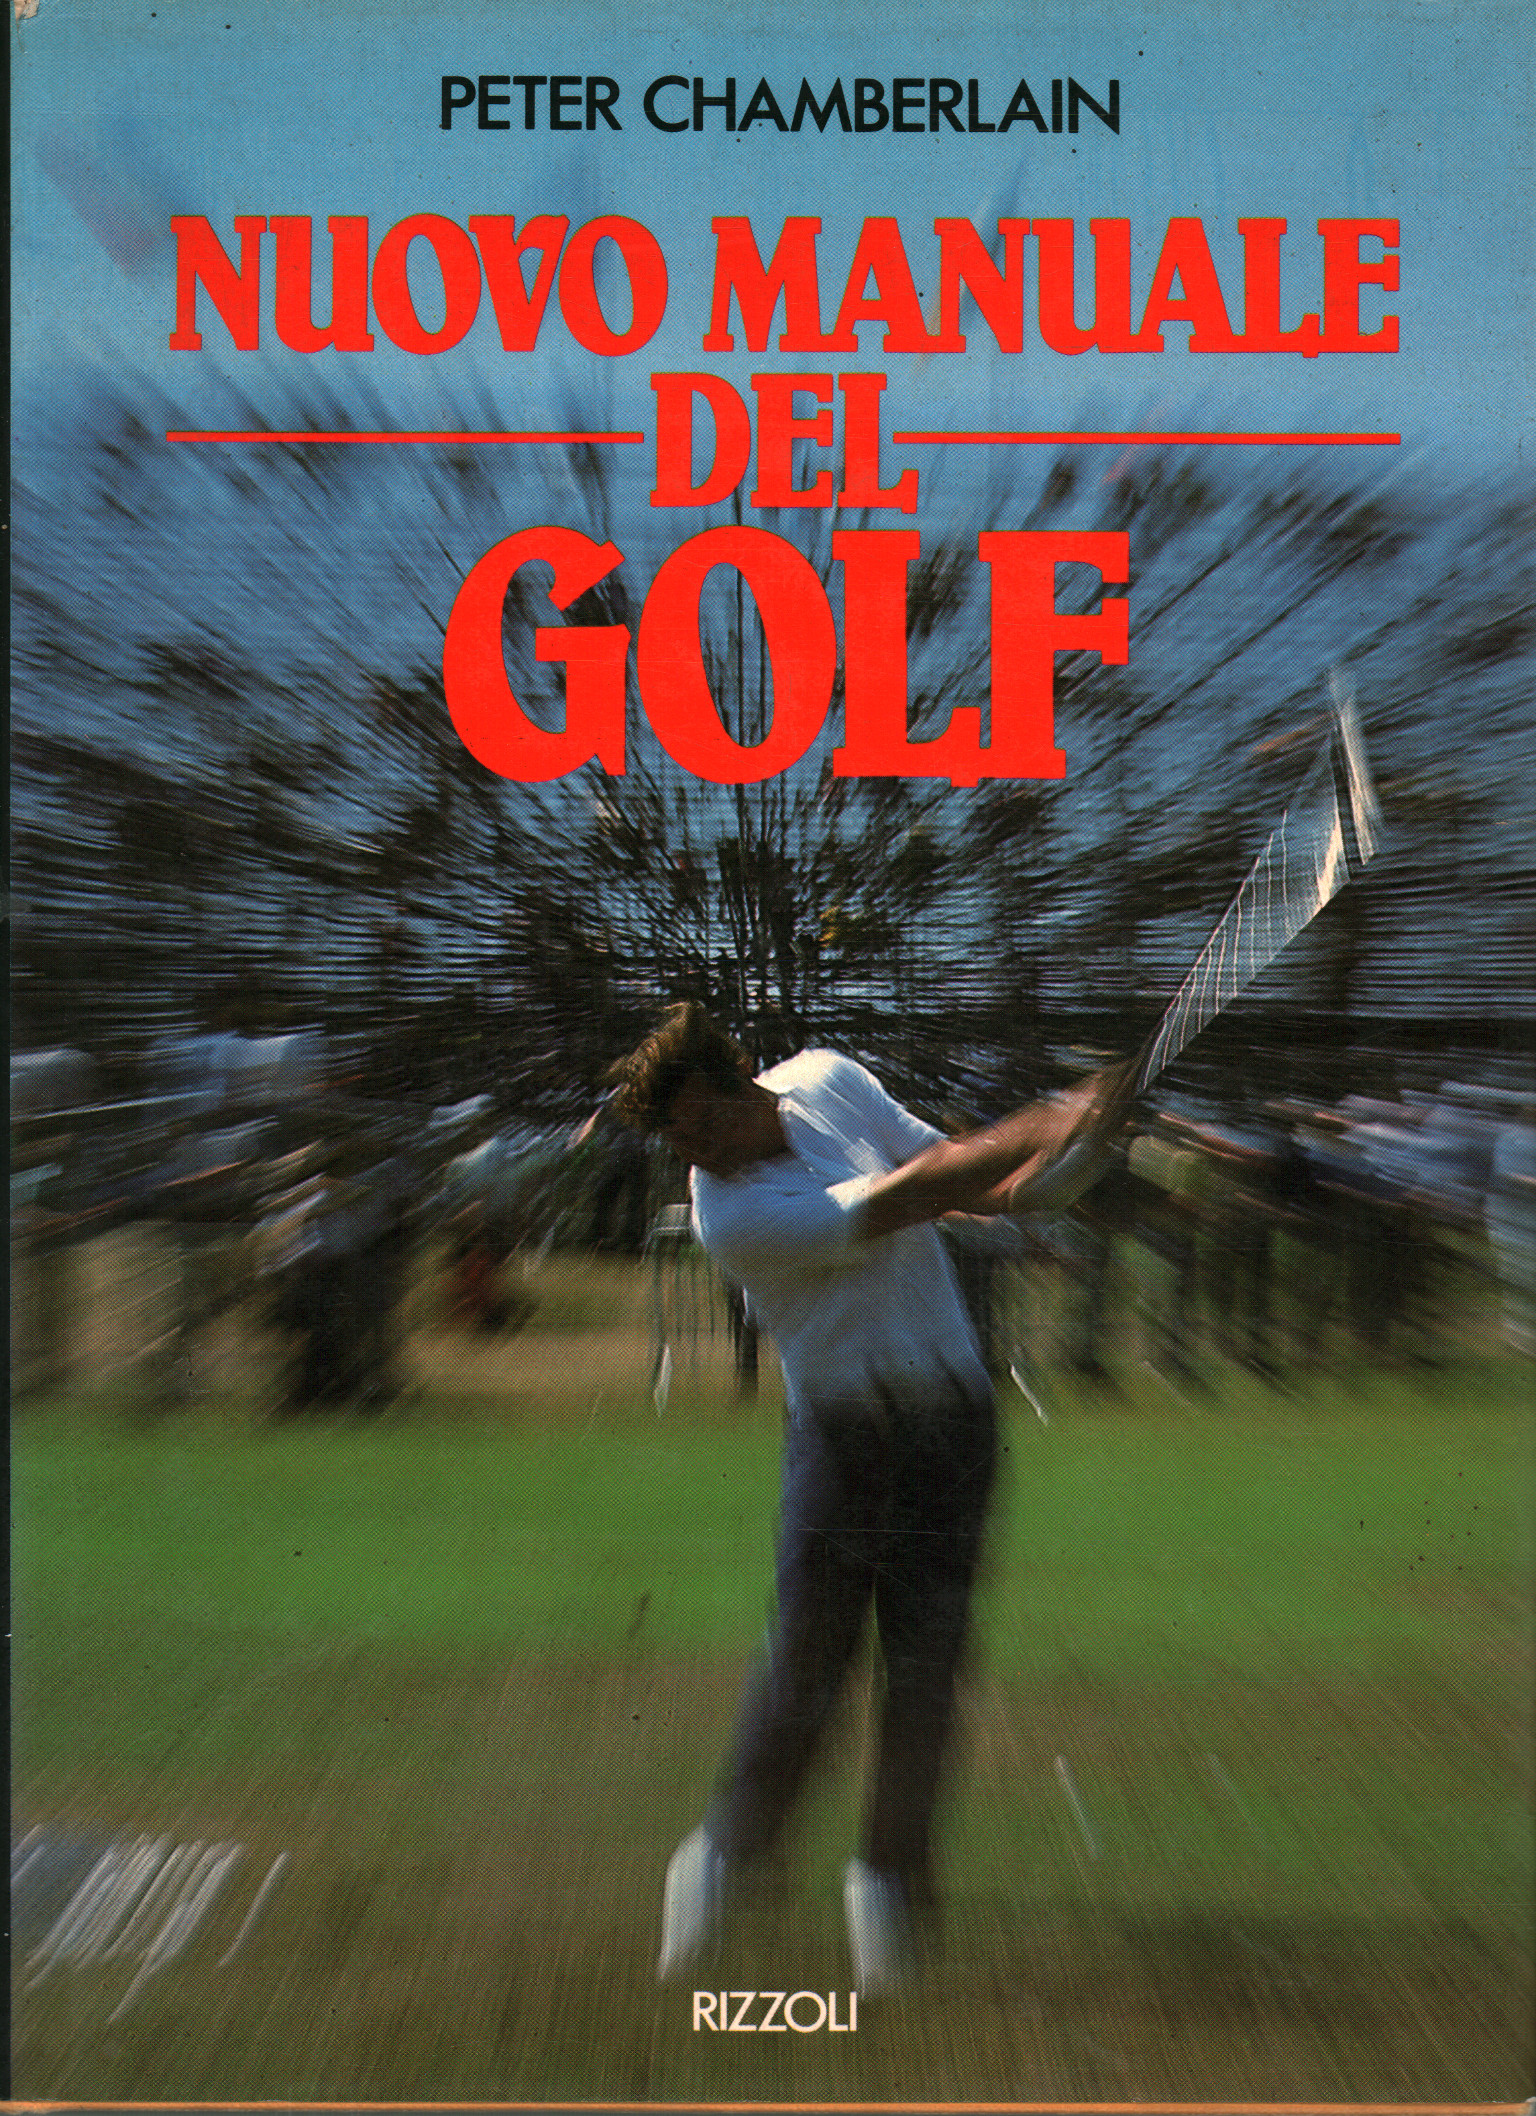 Nouveau manuel de golf, Peter Chamberlain